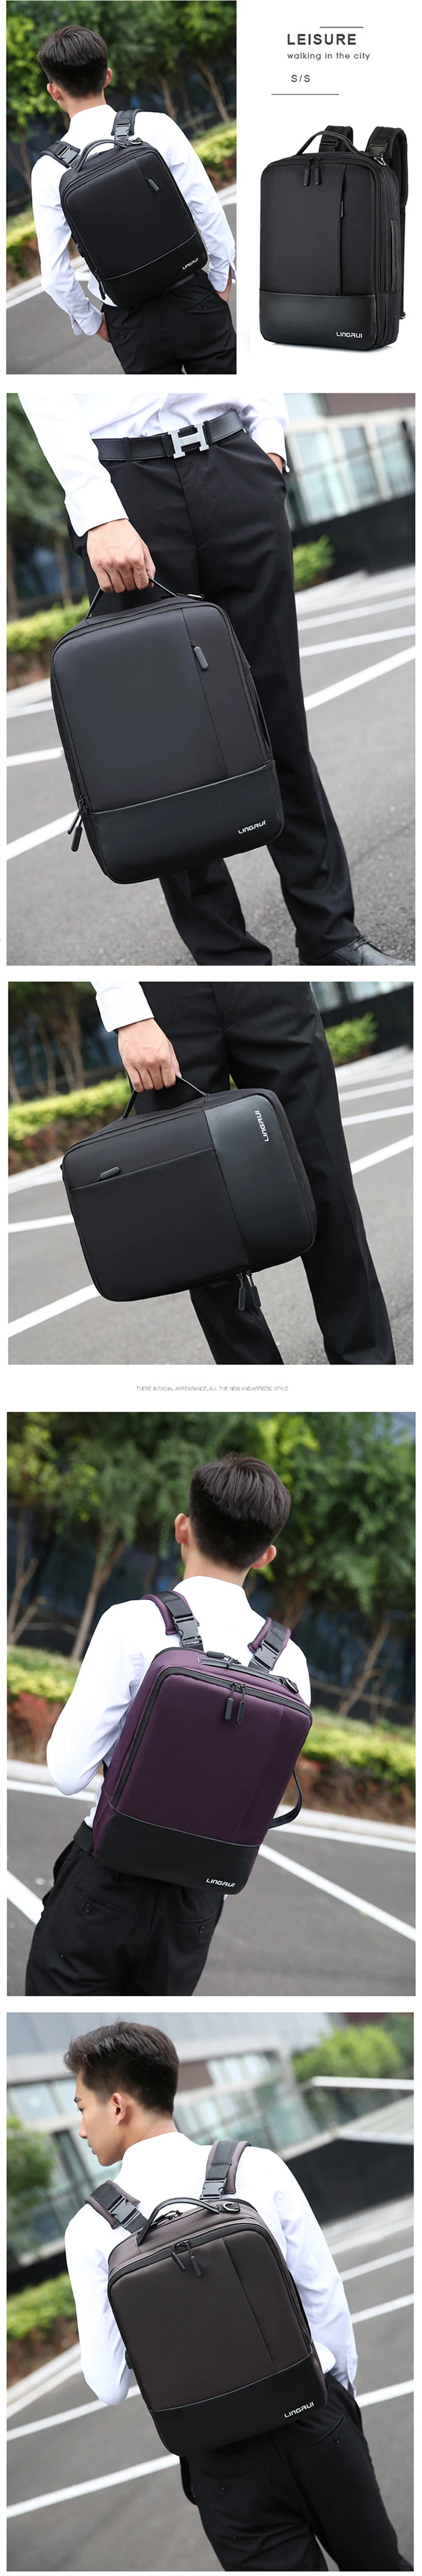 Новейший Противоугонный водонепроницаемый USB порт для зарядки ноутбука рюкзак для ноутбука сумка чехол для Macbook Air Pro13-15 дюймов Сумка через плечо